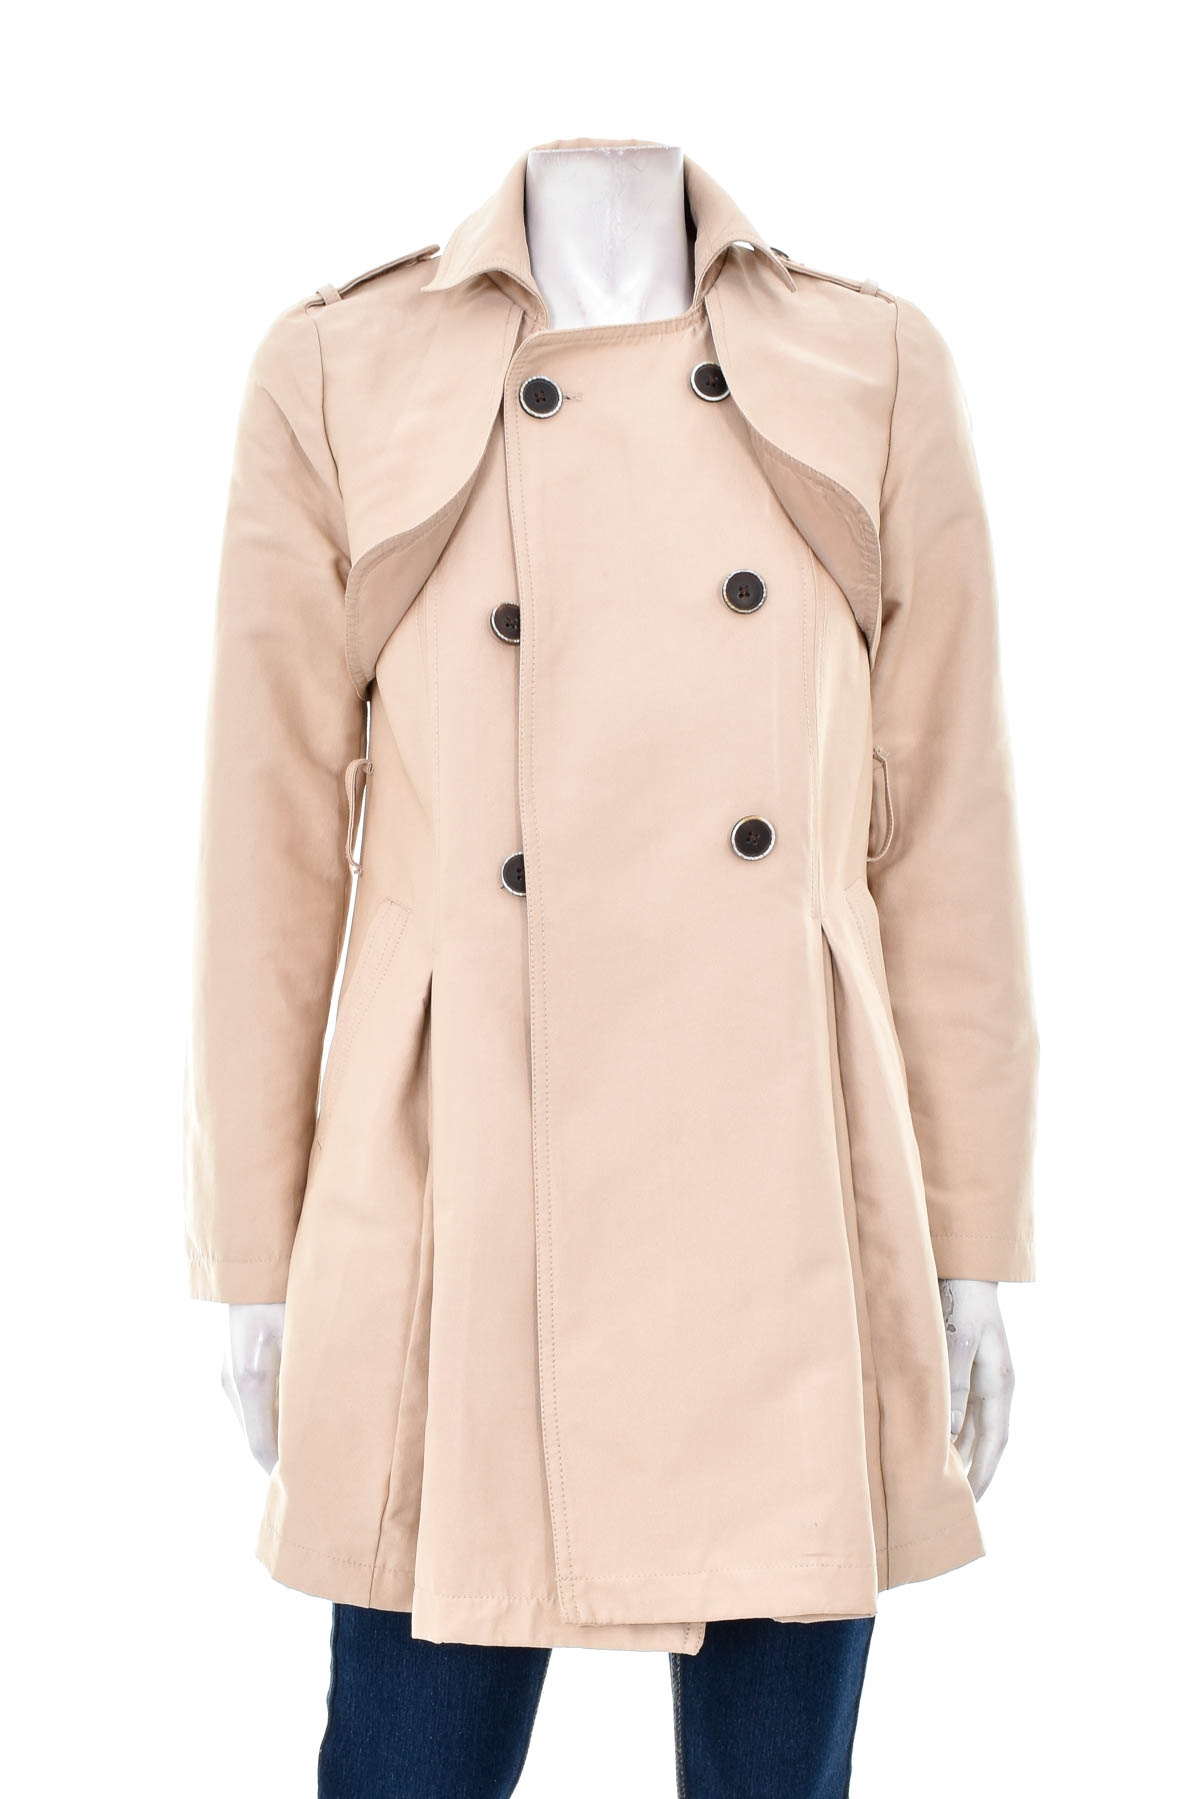 Γυναικείο παλτό - Colline - 0